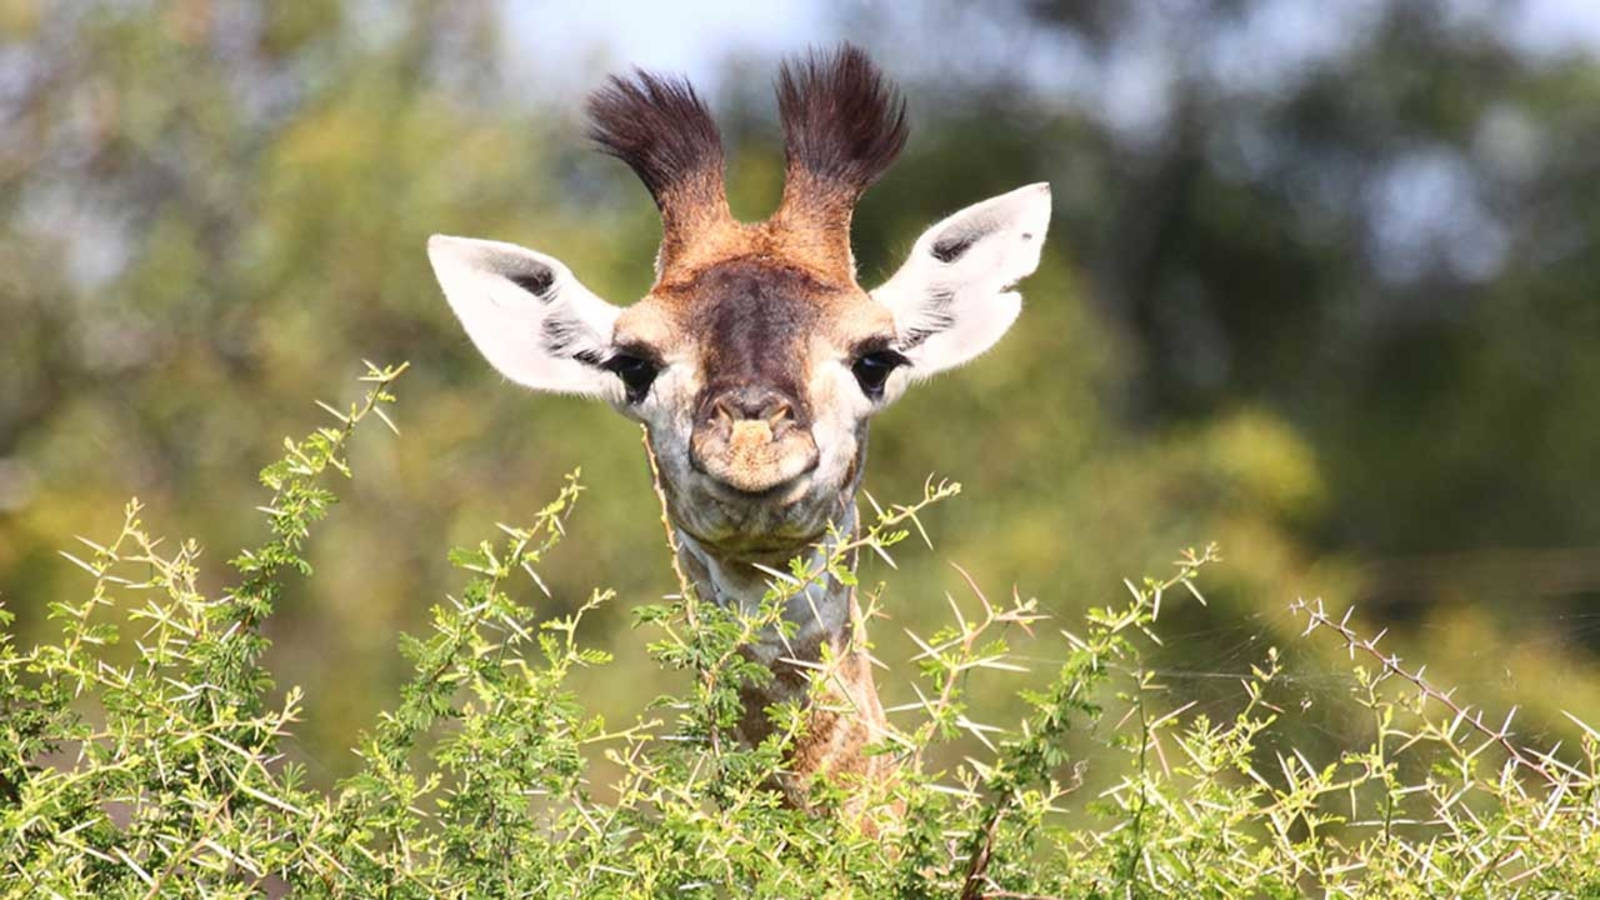 Innocent Delight - A Baby Giraffe With Bushy Horns Wallpaper